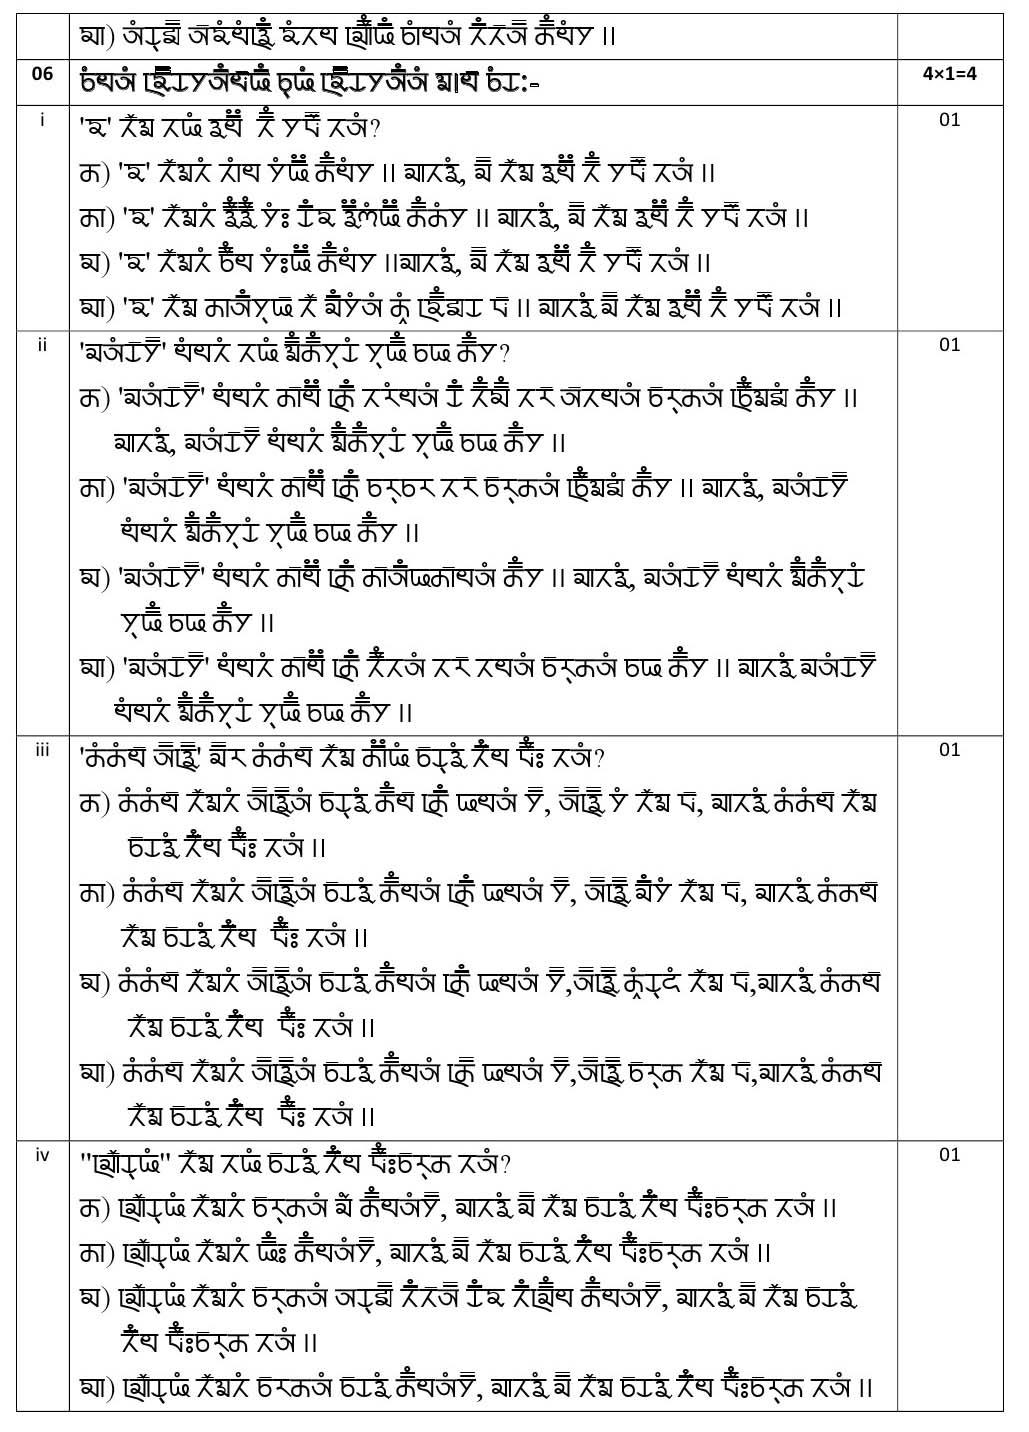 Gurung CBSE Class X Sample Question Paper 2020 21 - Image 9